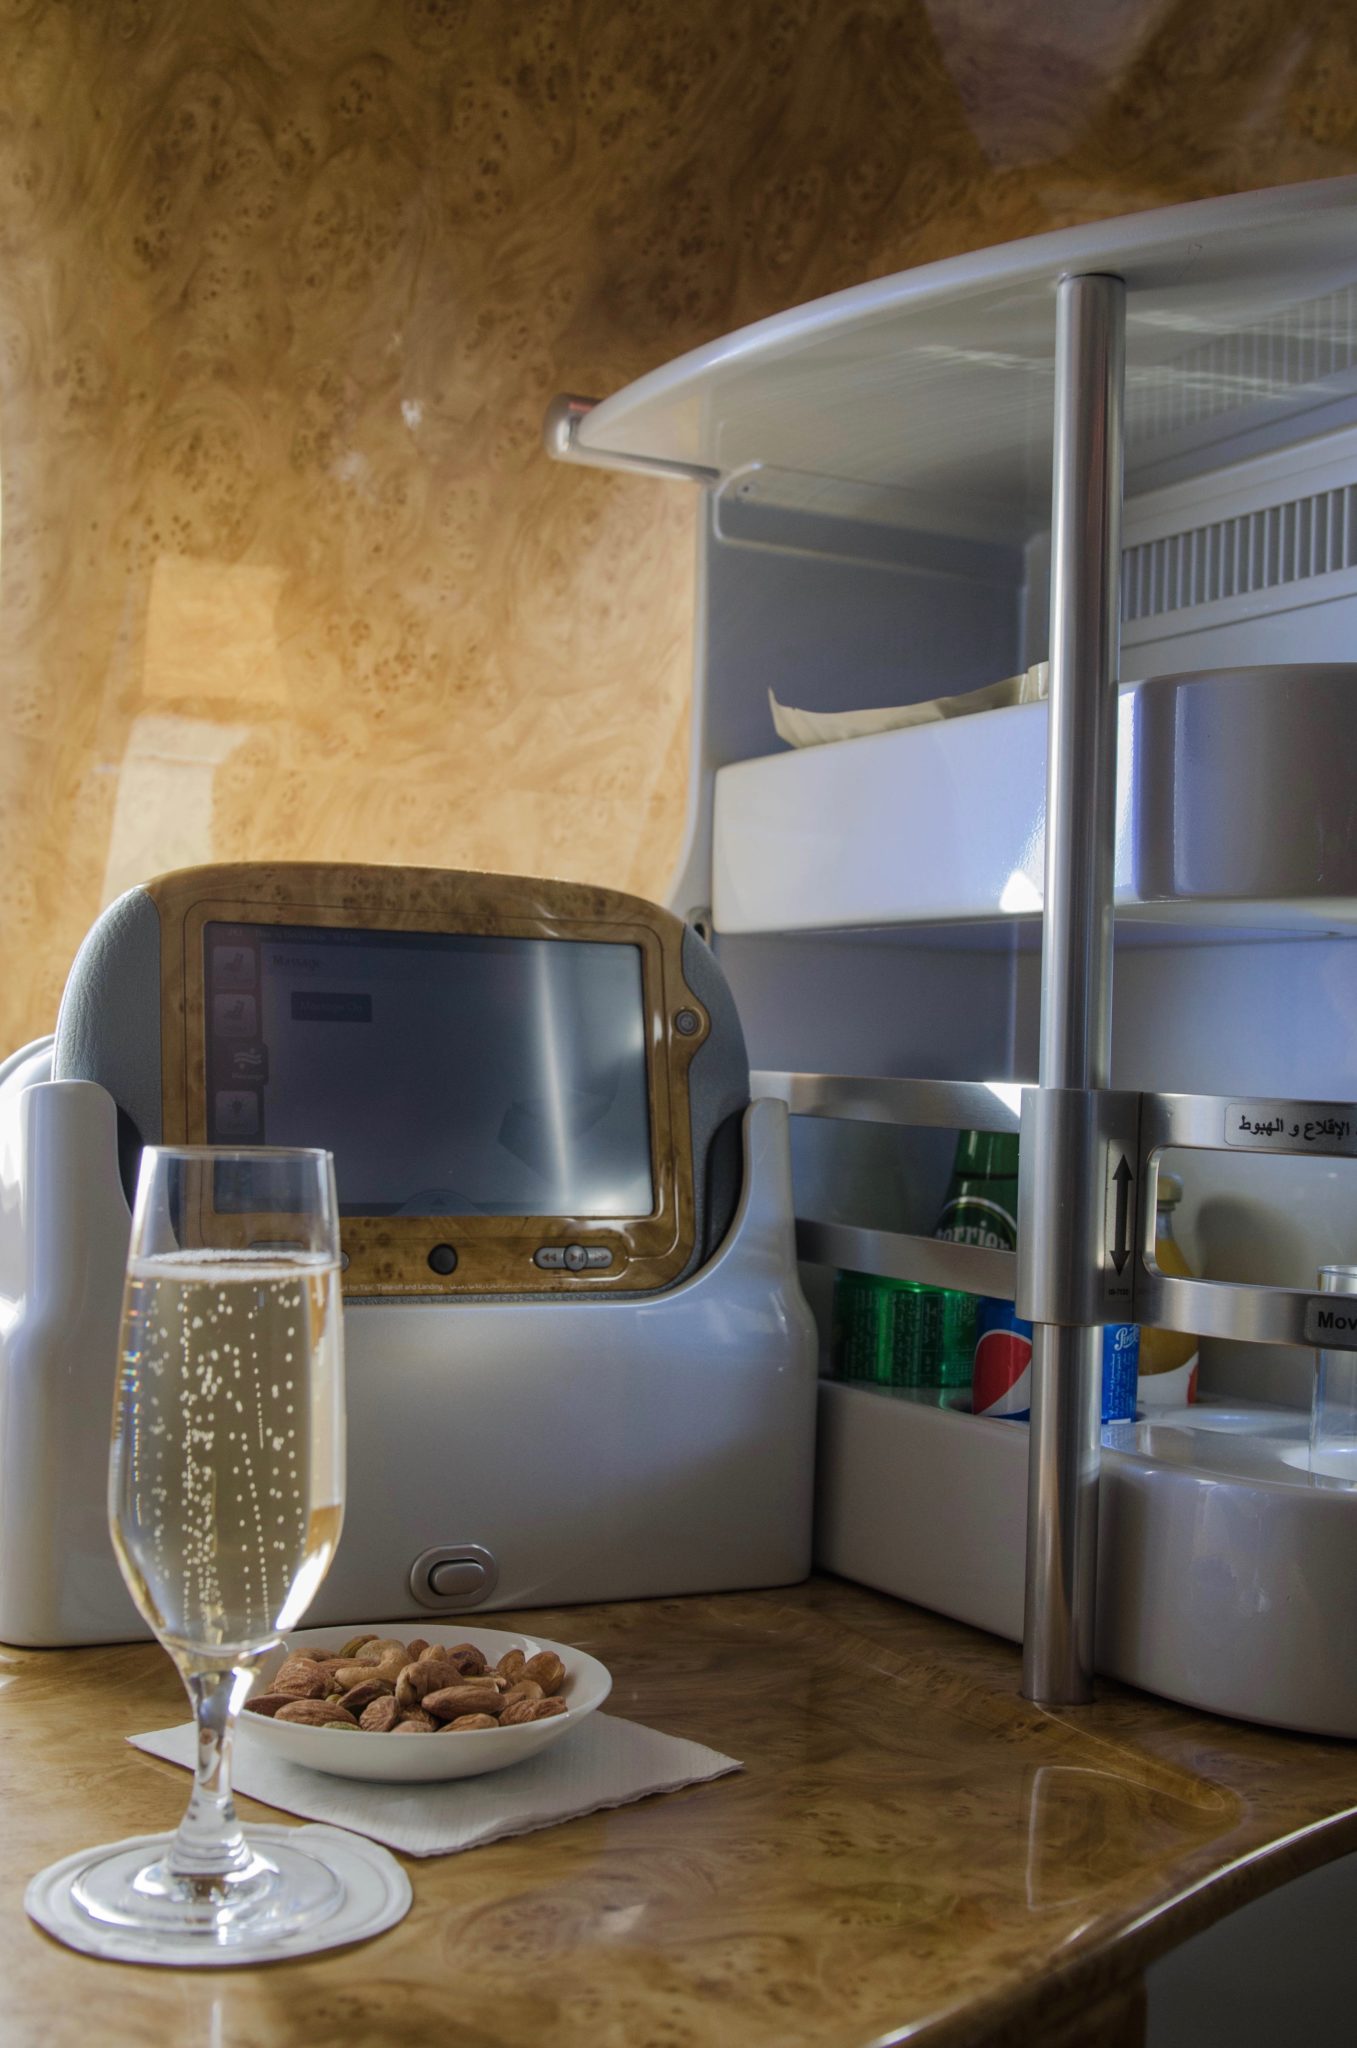 Emirates Business Class im A380: Champagner darf den gesamten Flug über getrunken werden